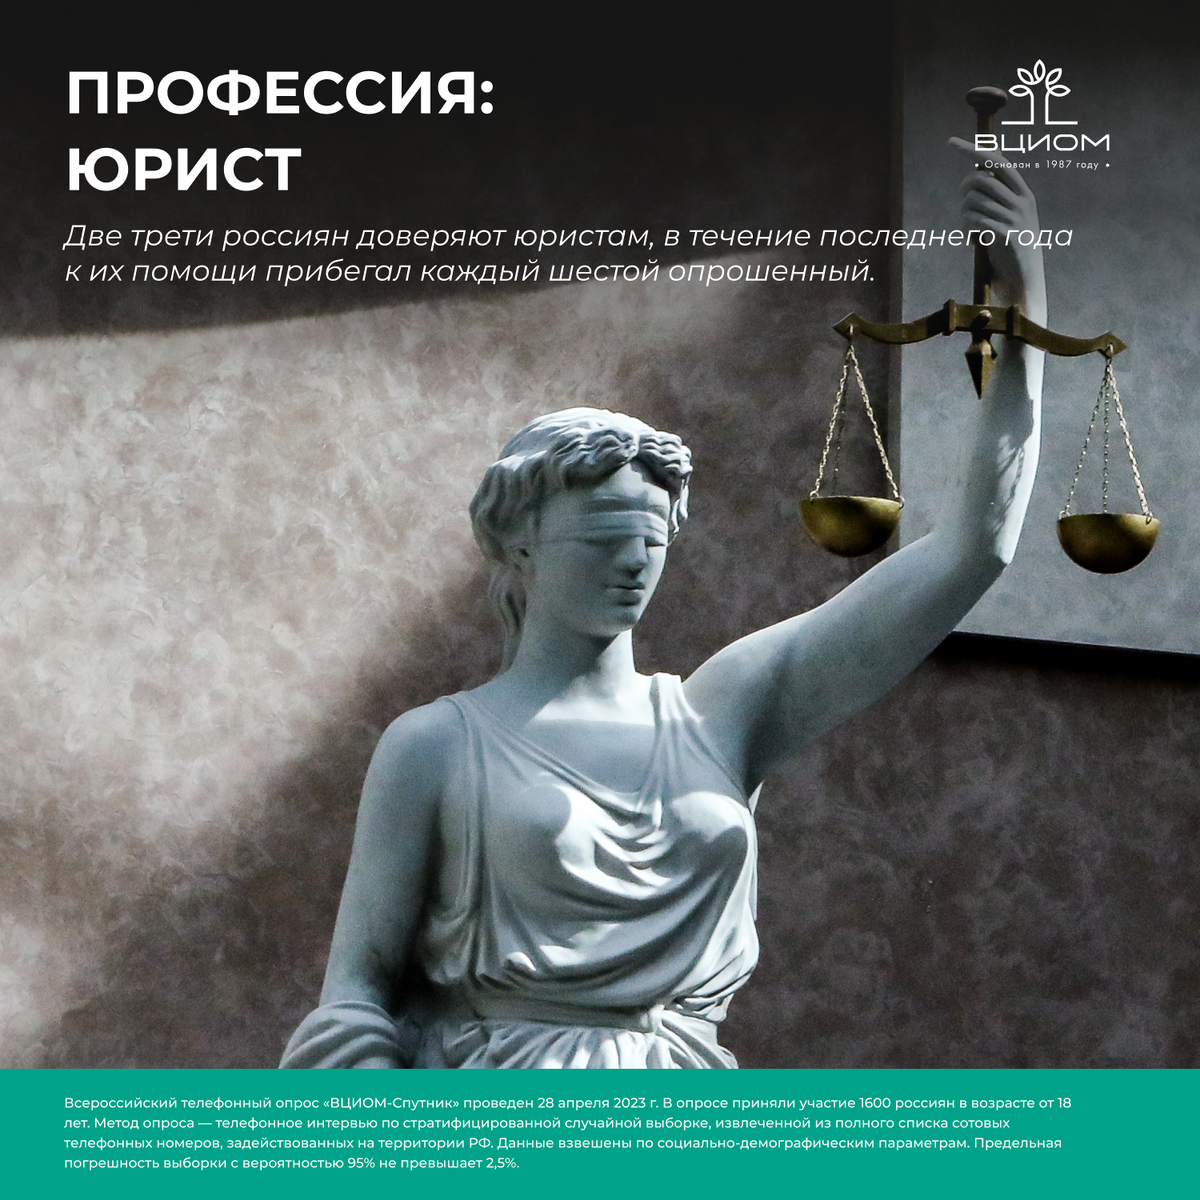 Две трети россиян доверяют юристам (67%), юридическими услугами за последний год воспользовались 17% опрошенных. Наиболее частый мотив обращения к специалистам — решение имущественных вопросов (6%).